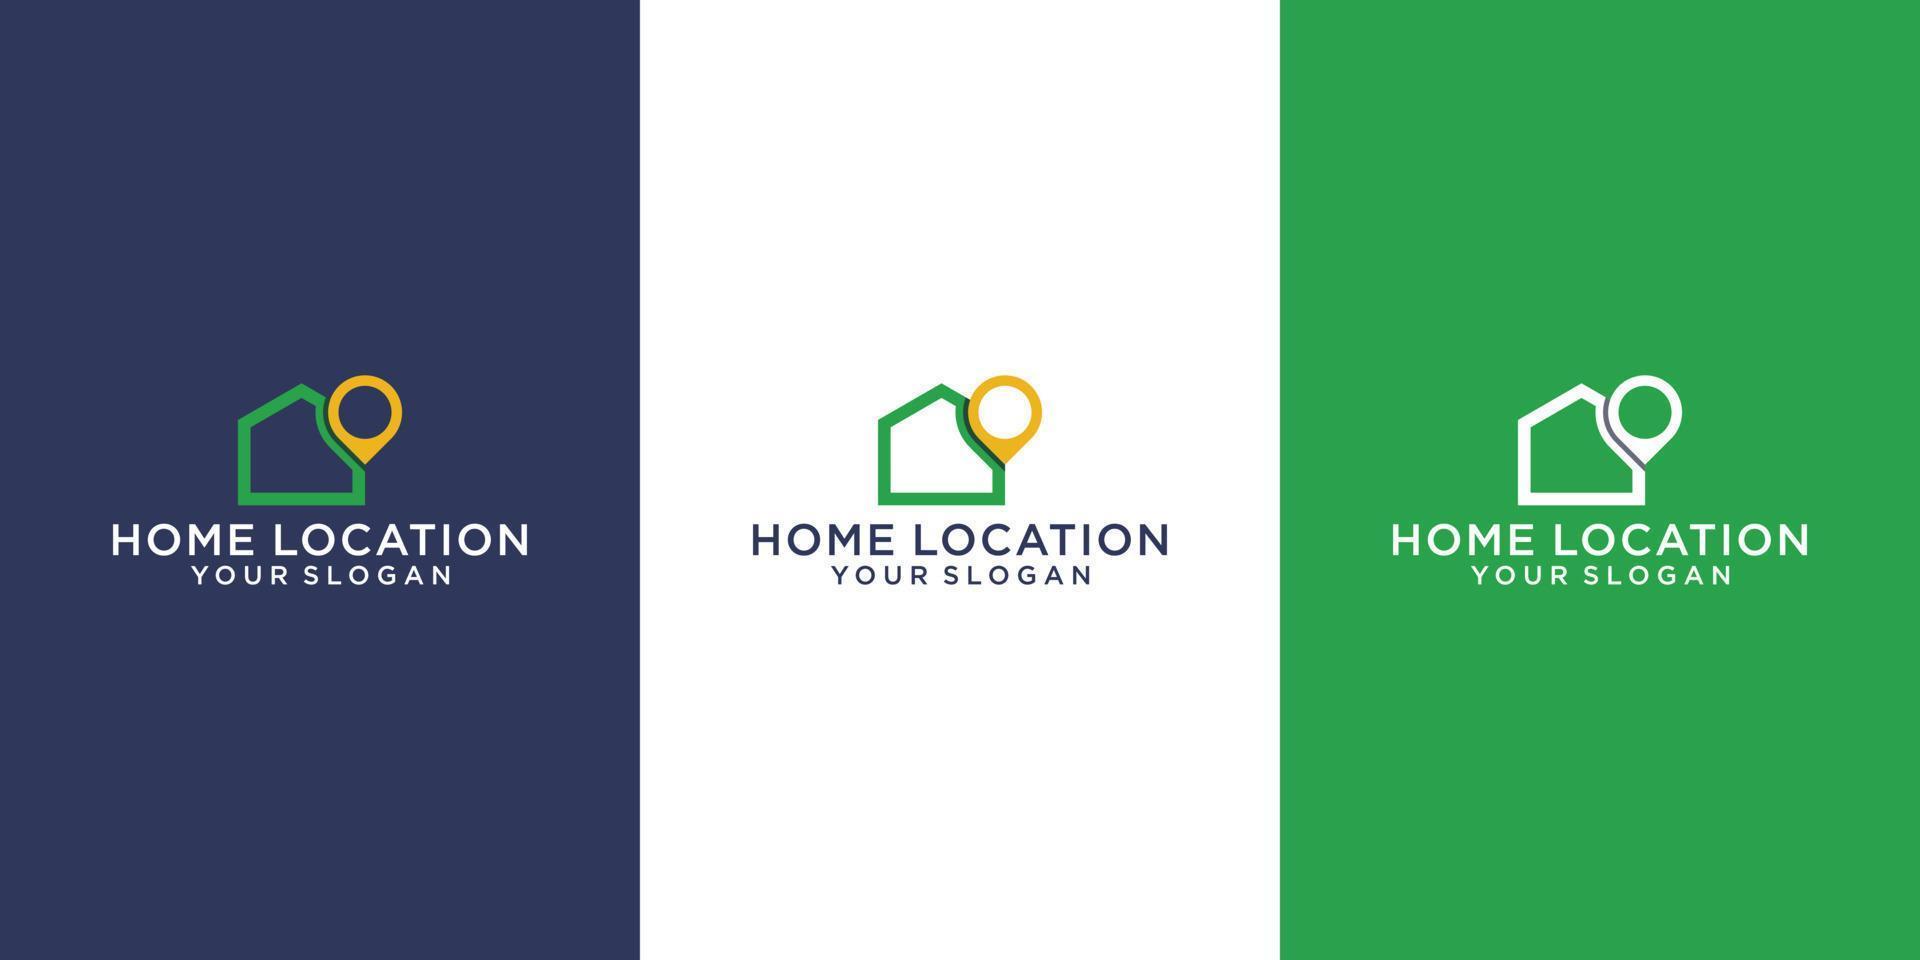 Logo-Kartenzeiger mit Haussymbol isoliert auf weißem Hintergrund. Markierungssymbol für den Heimatstandort. Logo Design vektor